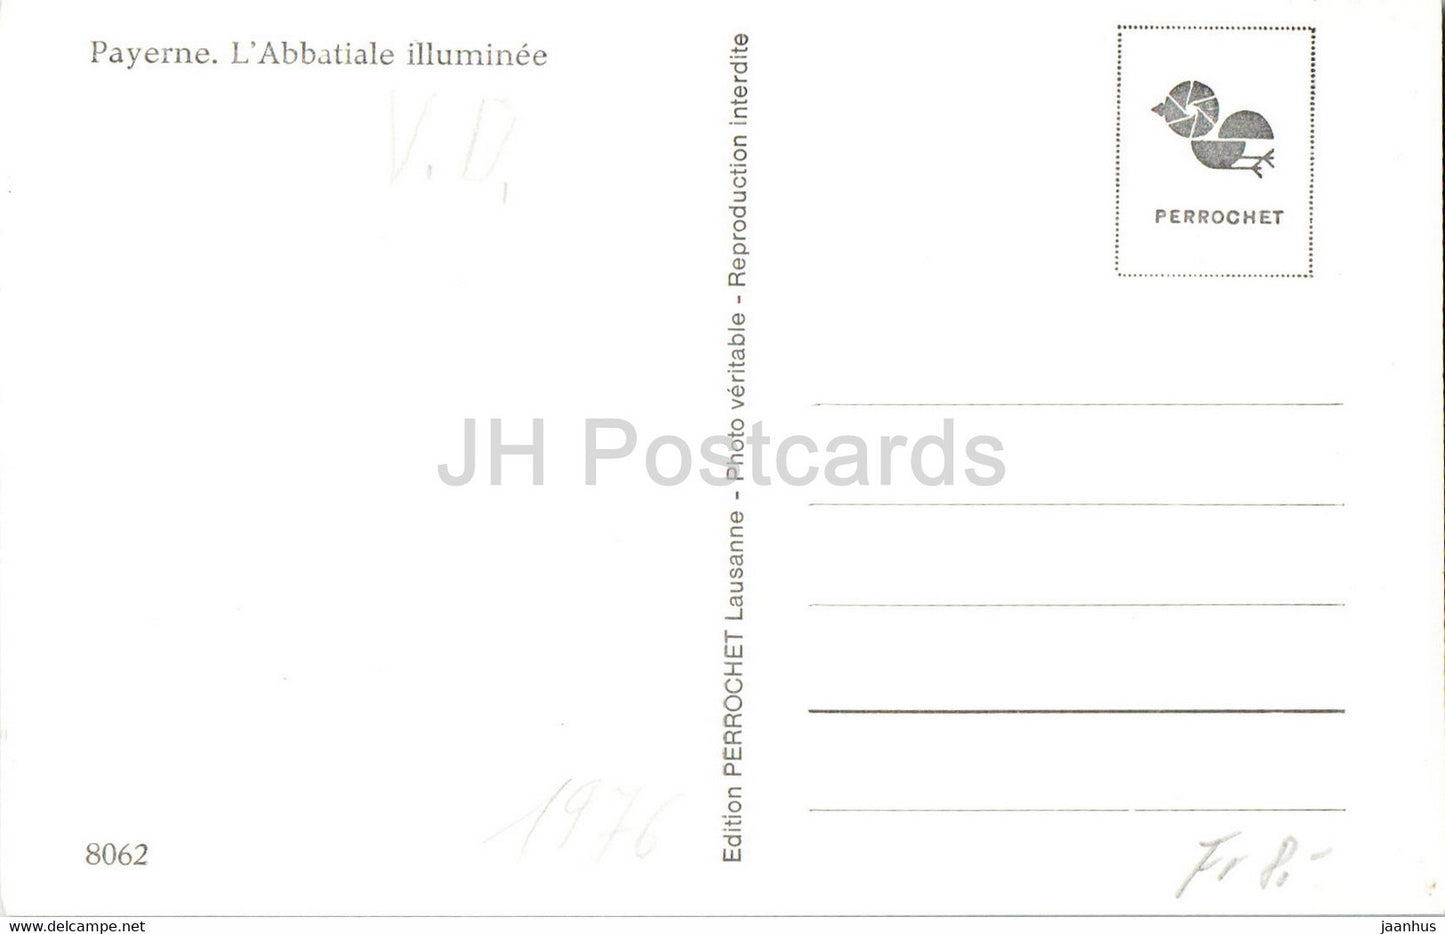 Payerne - L' Abbatiale illuminée - Abbaye - 8062 - carte postale ancienne - Suisse - inutilisée